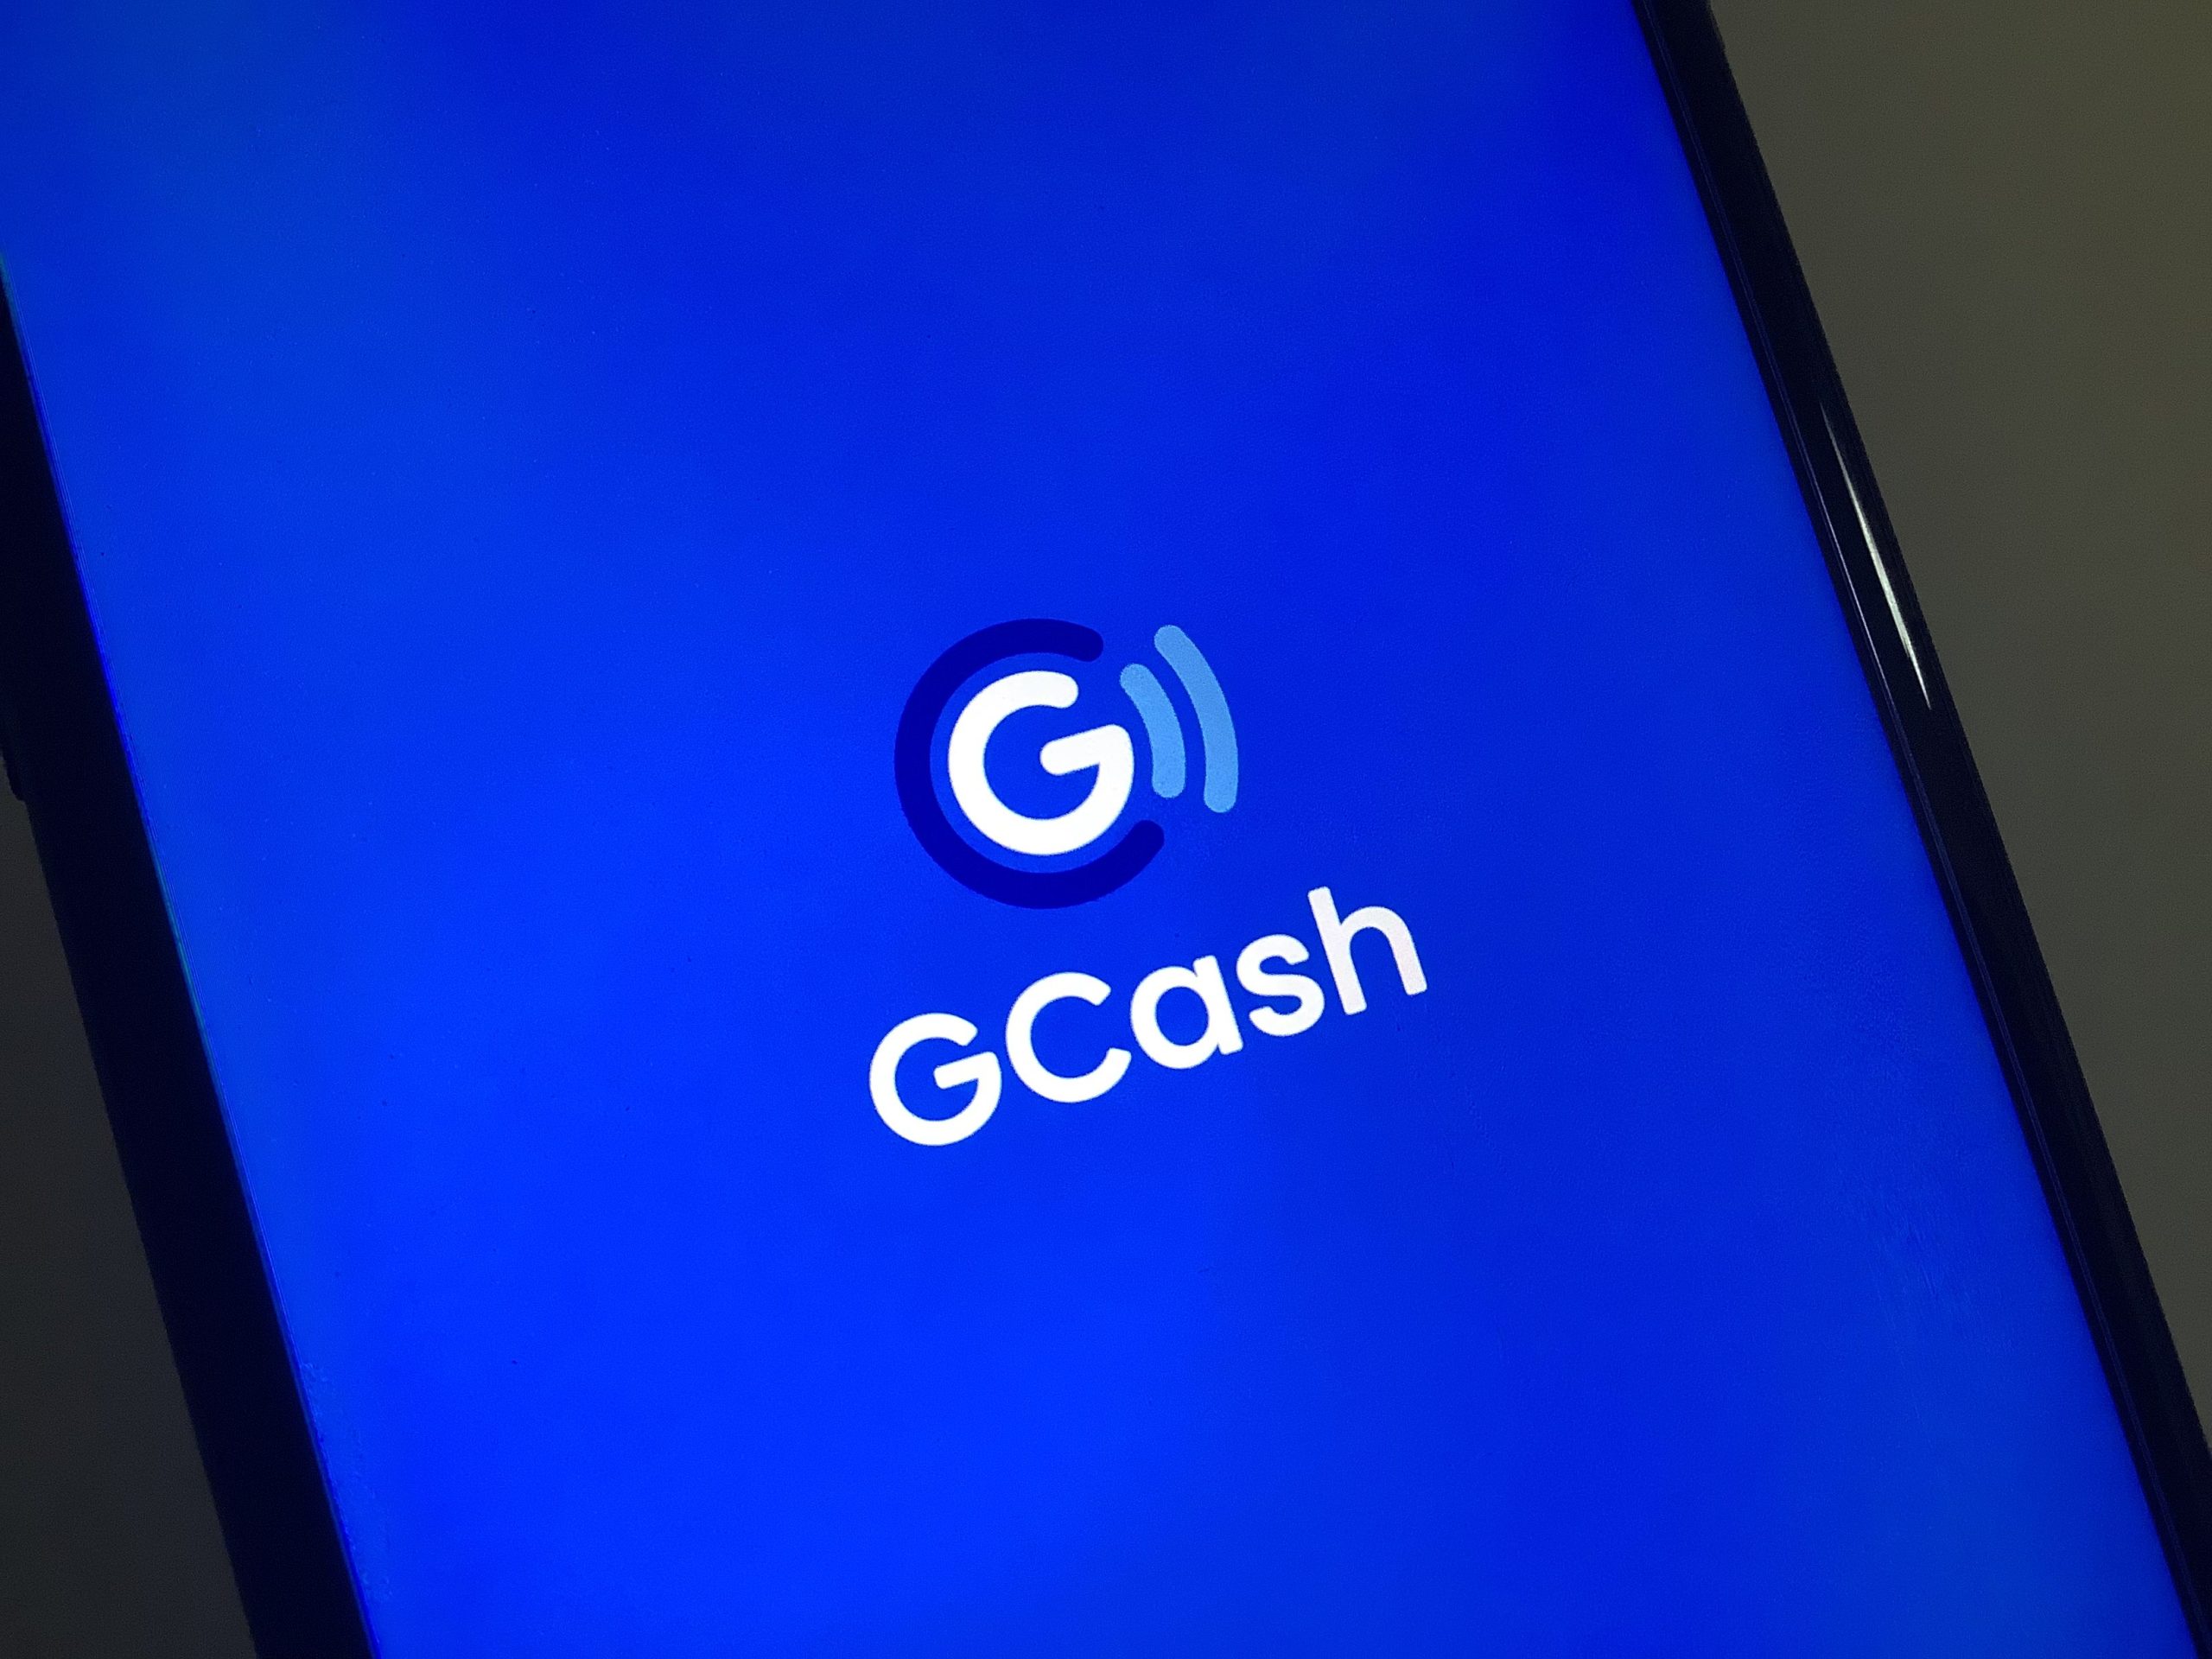 Gcash app